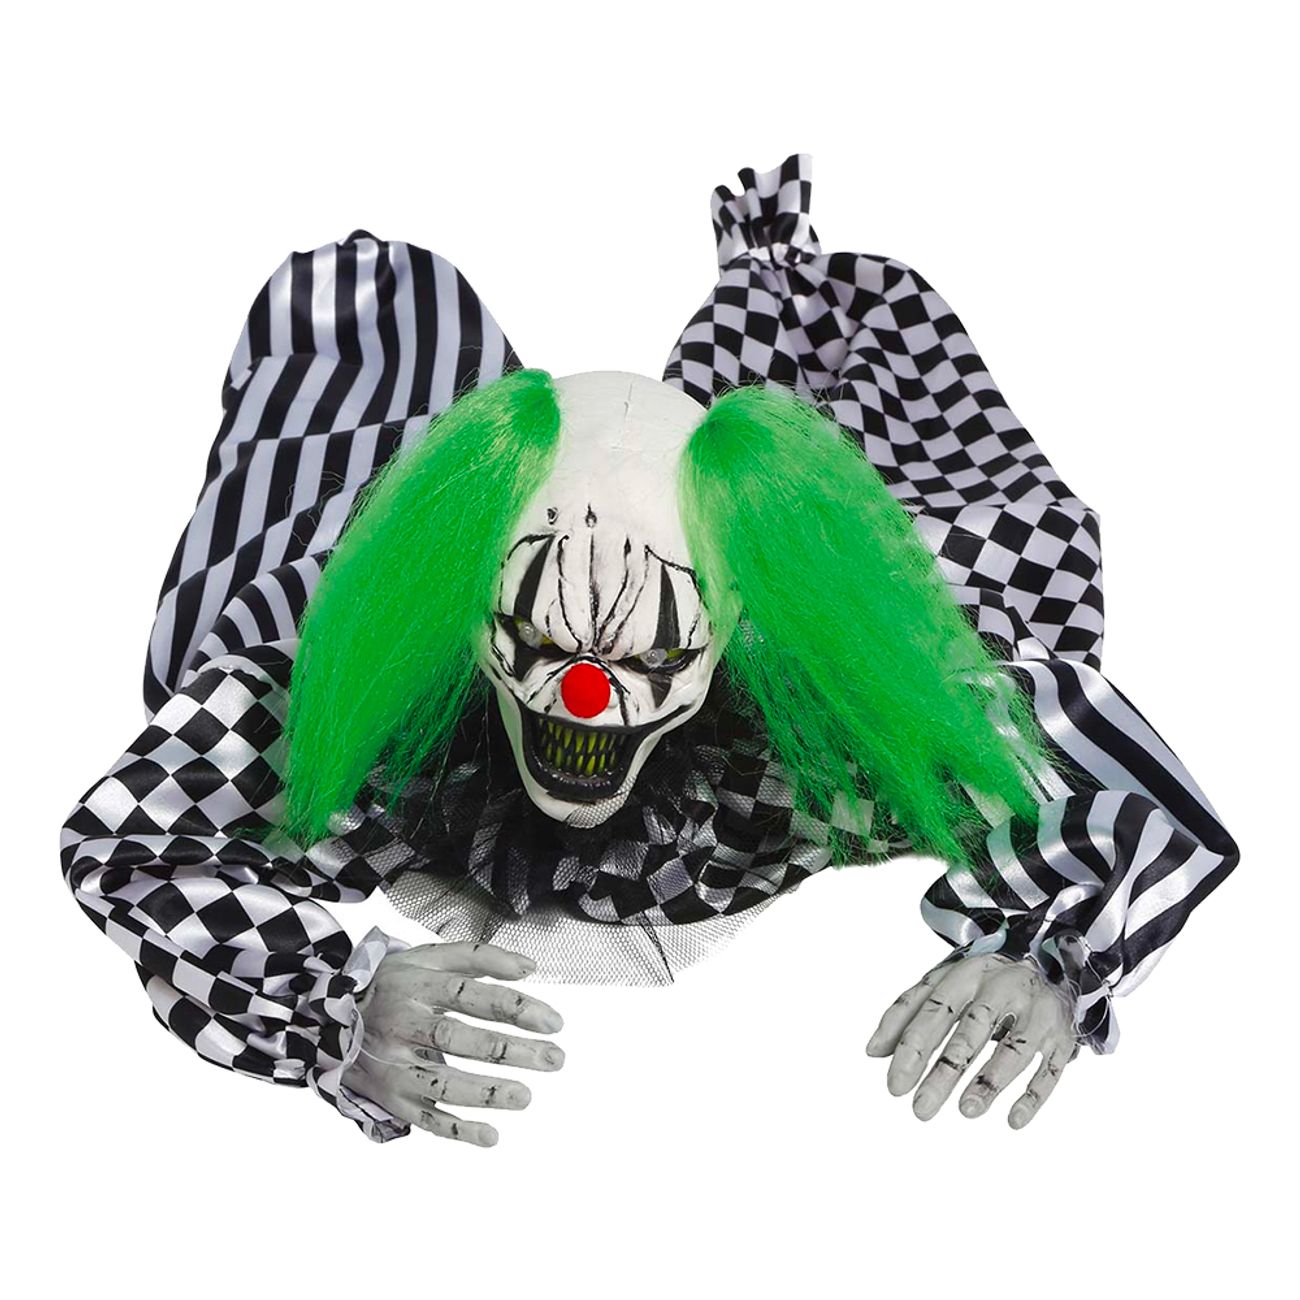 kralande-clown-prop-89873-1